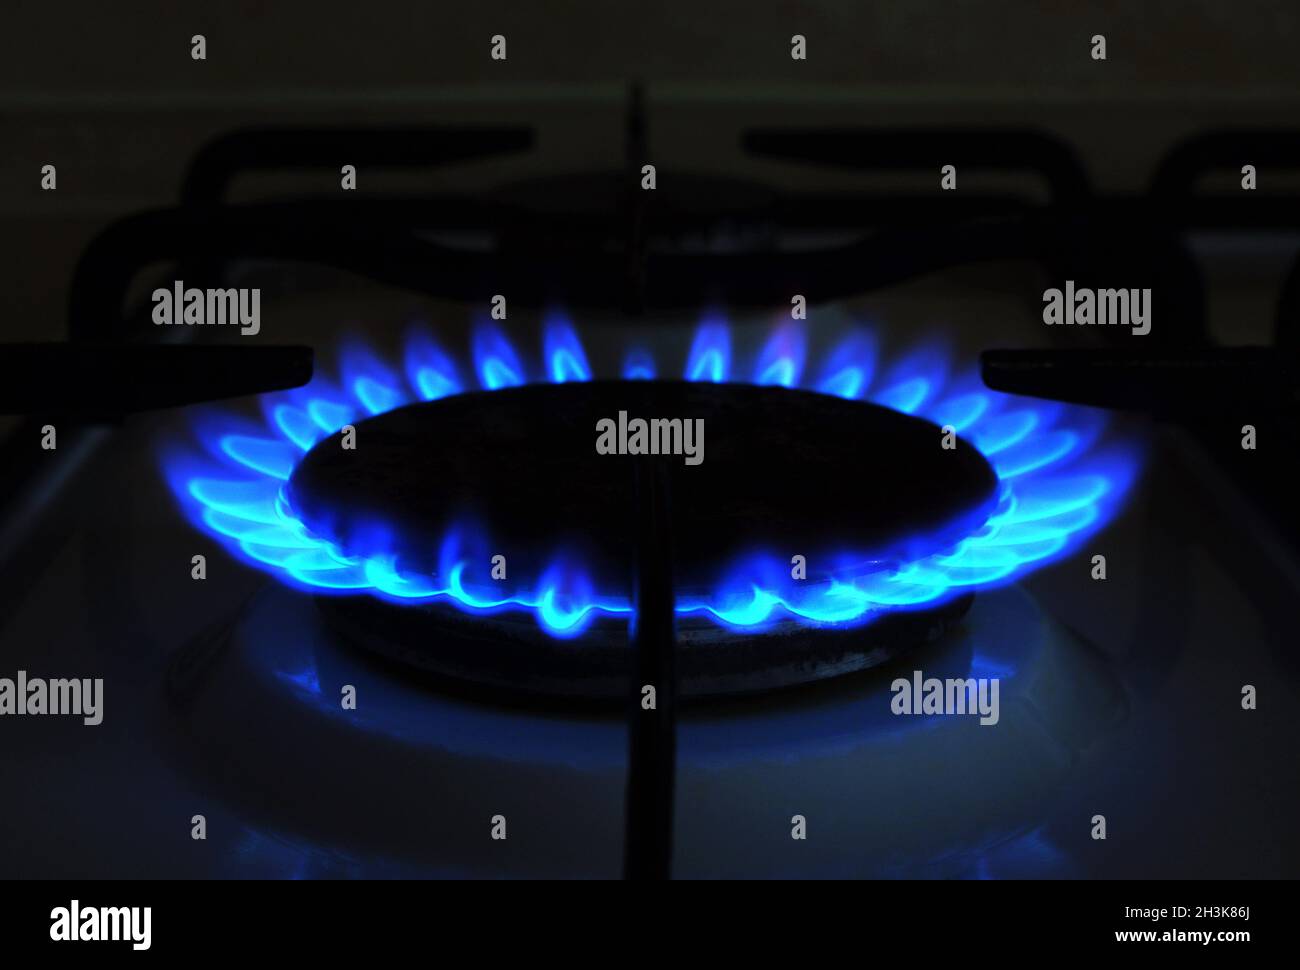 Gas naturale. Prezzi elevati di gas naturale. Fiamme blu di gas che bruciano da una stufa a gas da cucina. Crisi energetica. Foto Stock